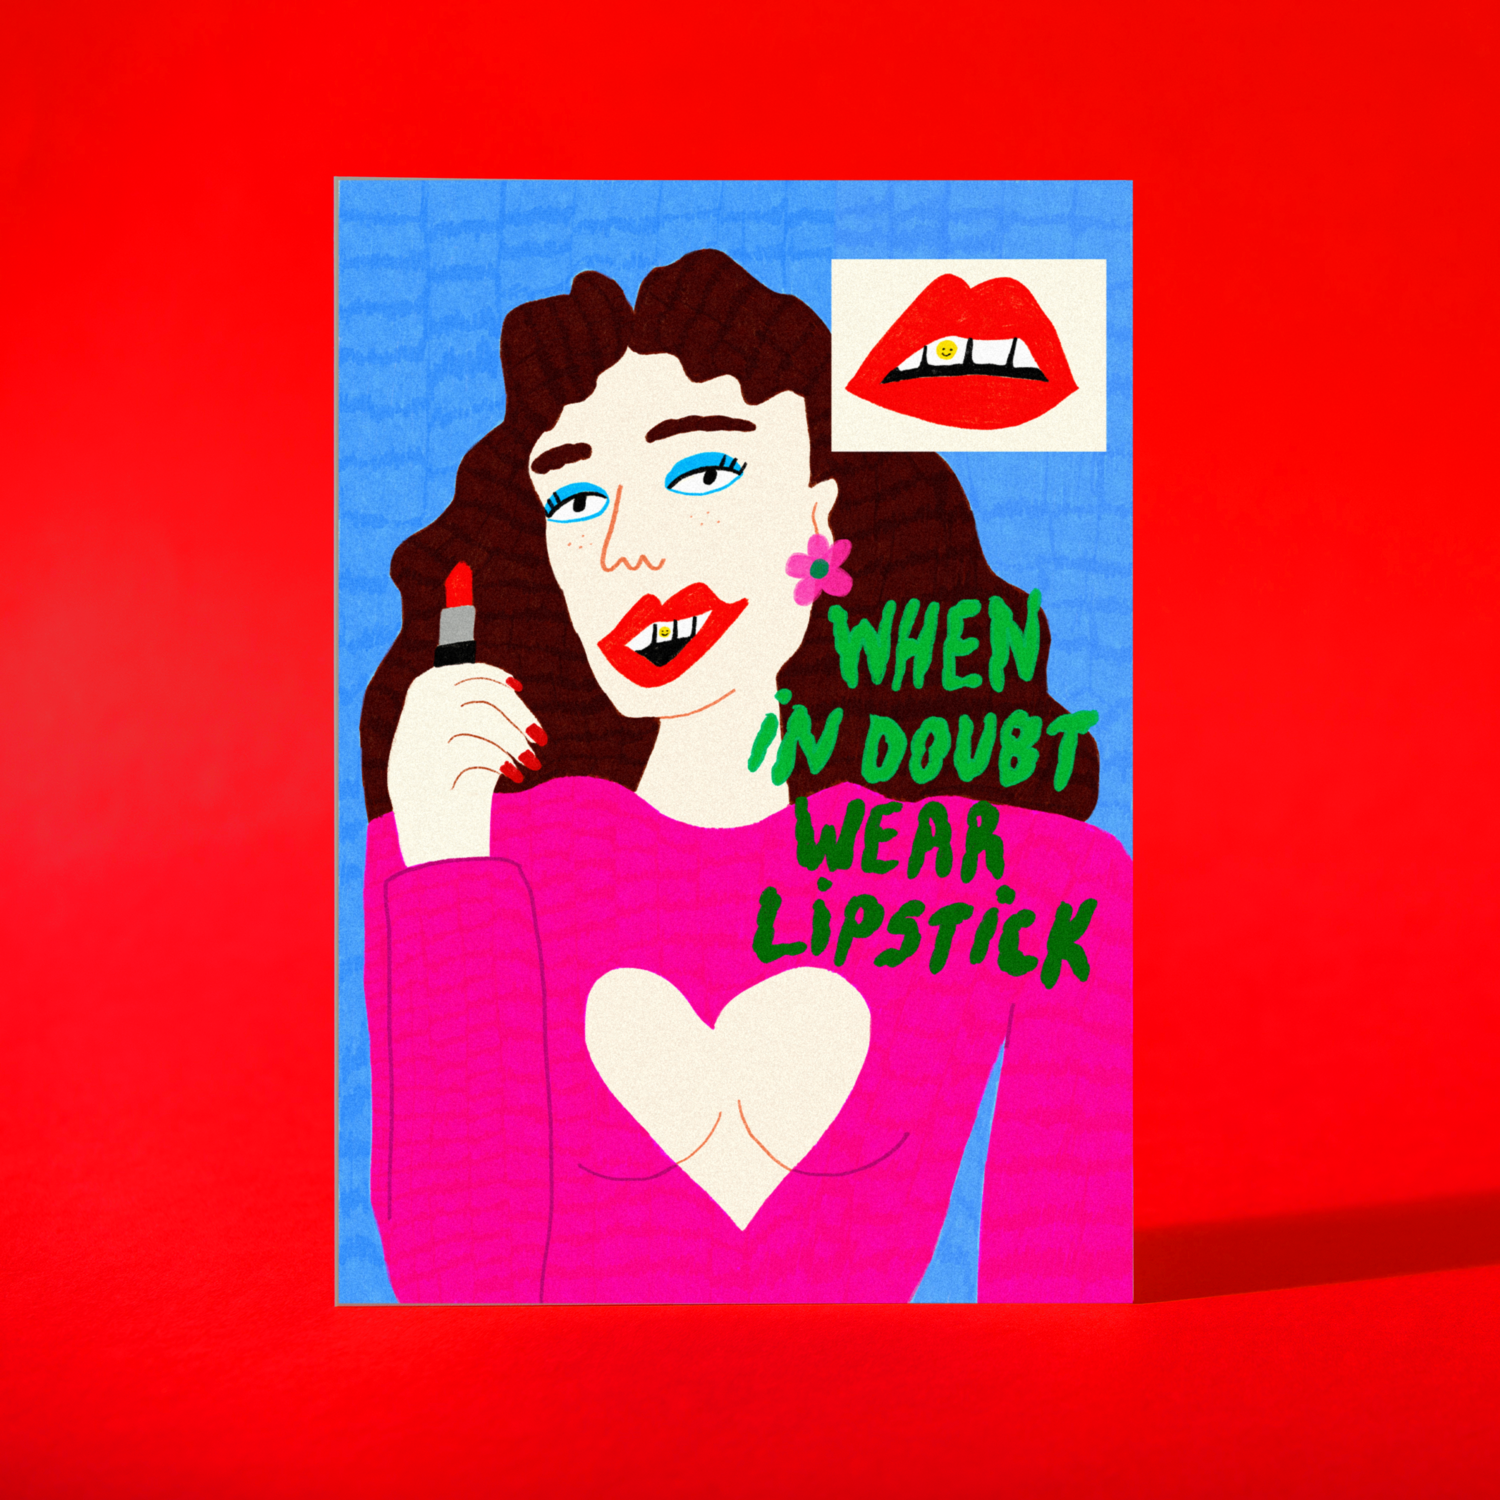 Art Print "When in doubt wear lipstick"